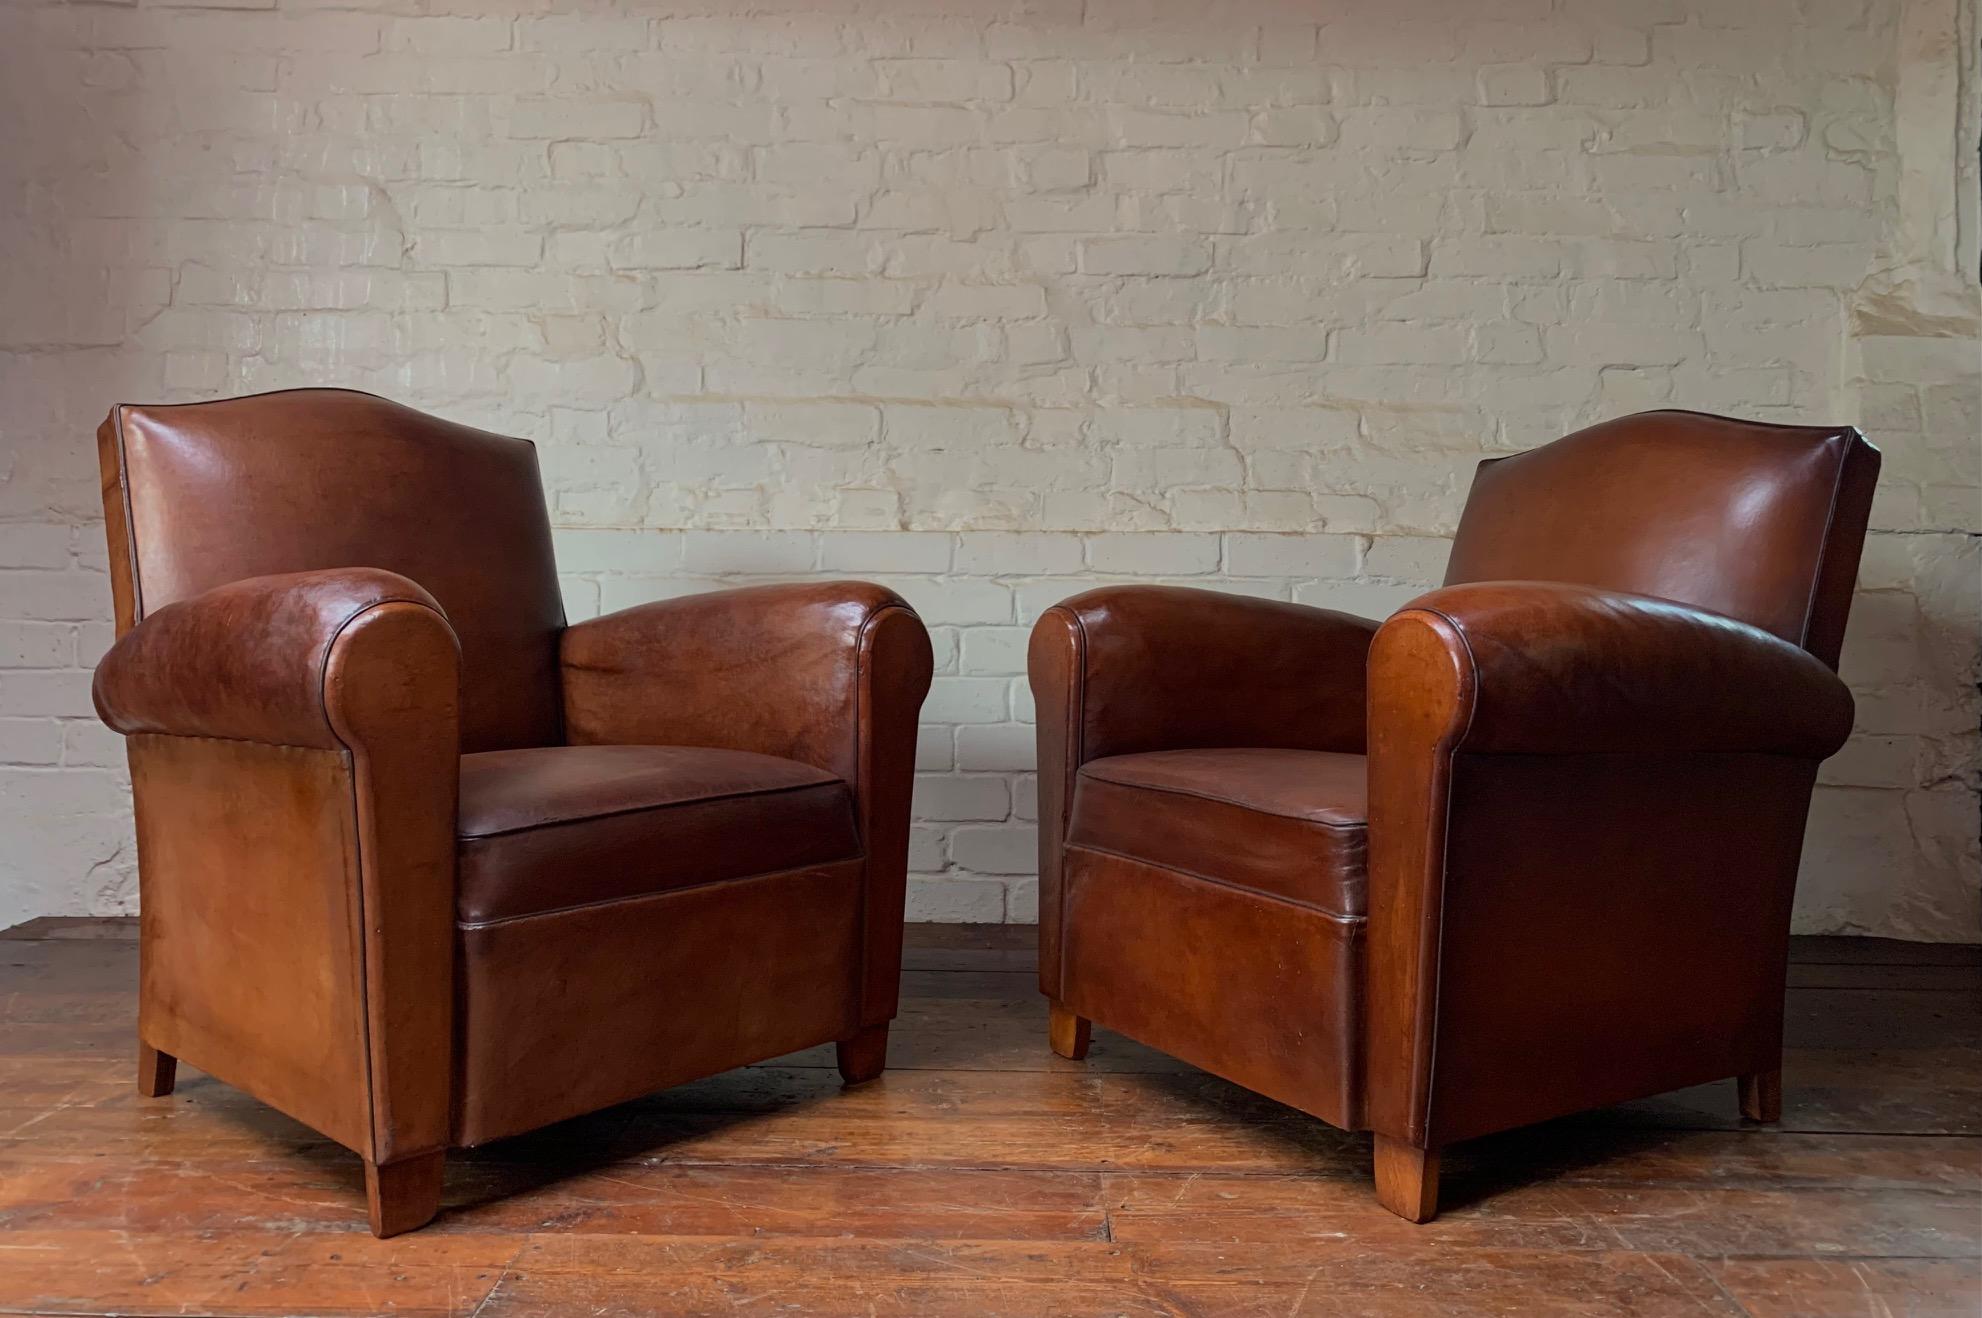 Ces chaises sont magnifiques. Le cuir brun havane d'origine a parfaitement vieilli. Après avoir été nettoyé et nourri, le cuir a révélé une magnifique patine de marron clair et de châtaigne. L'état de ces chaises est presque parfait et le cuir a